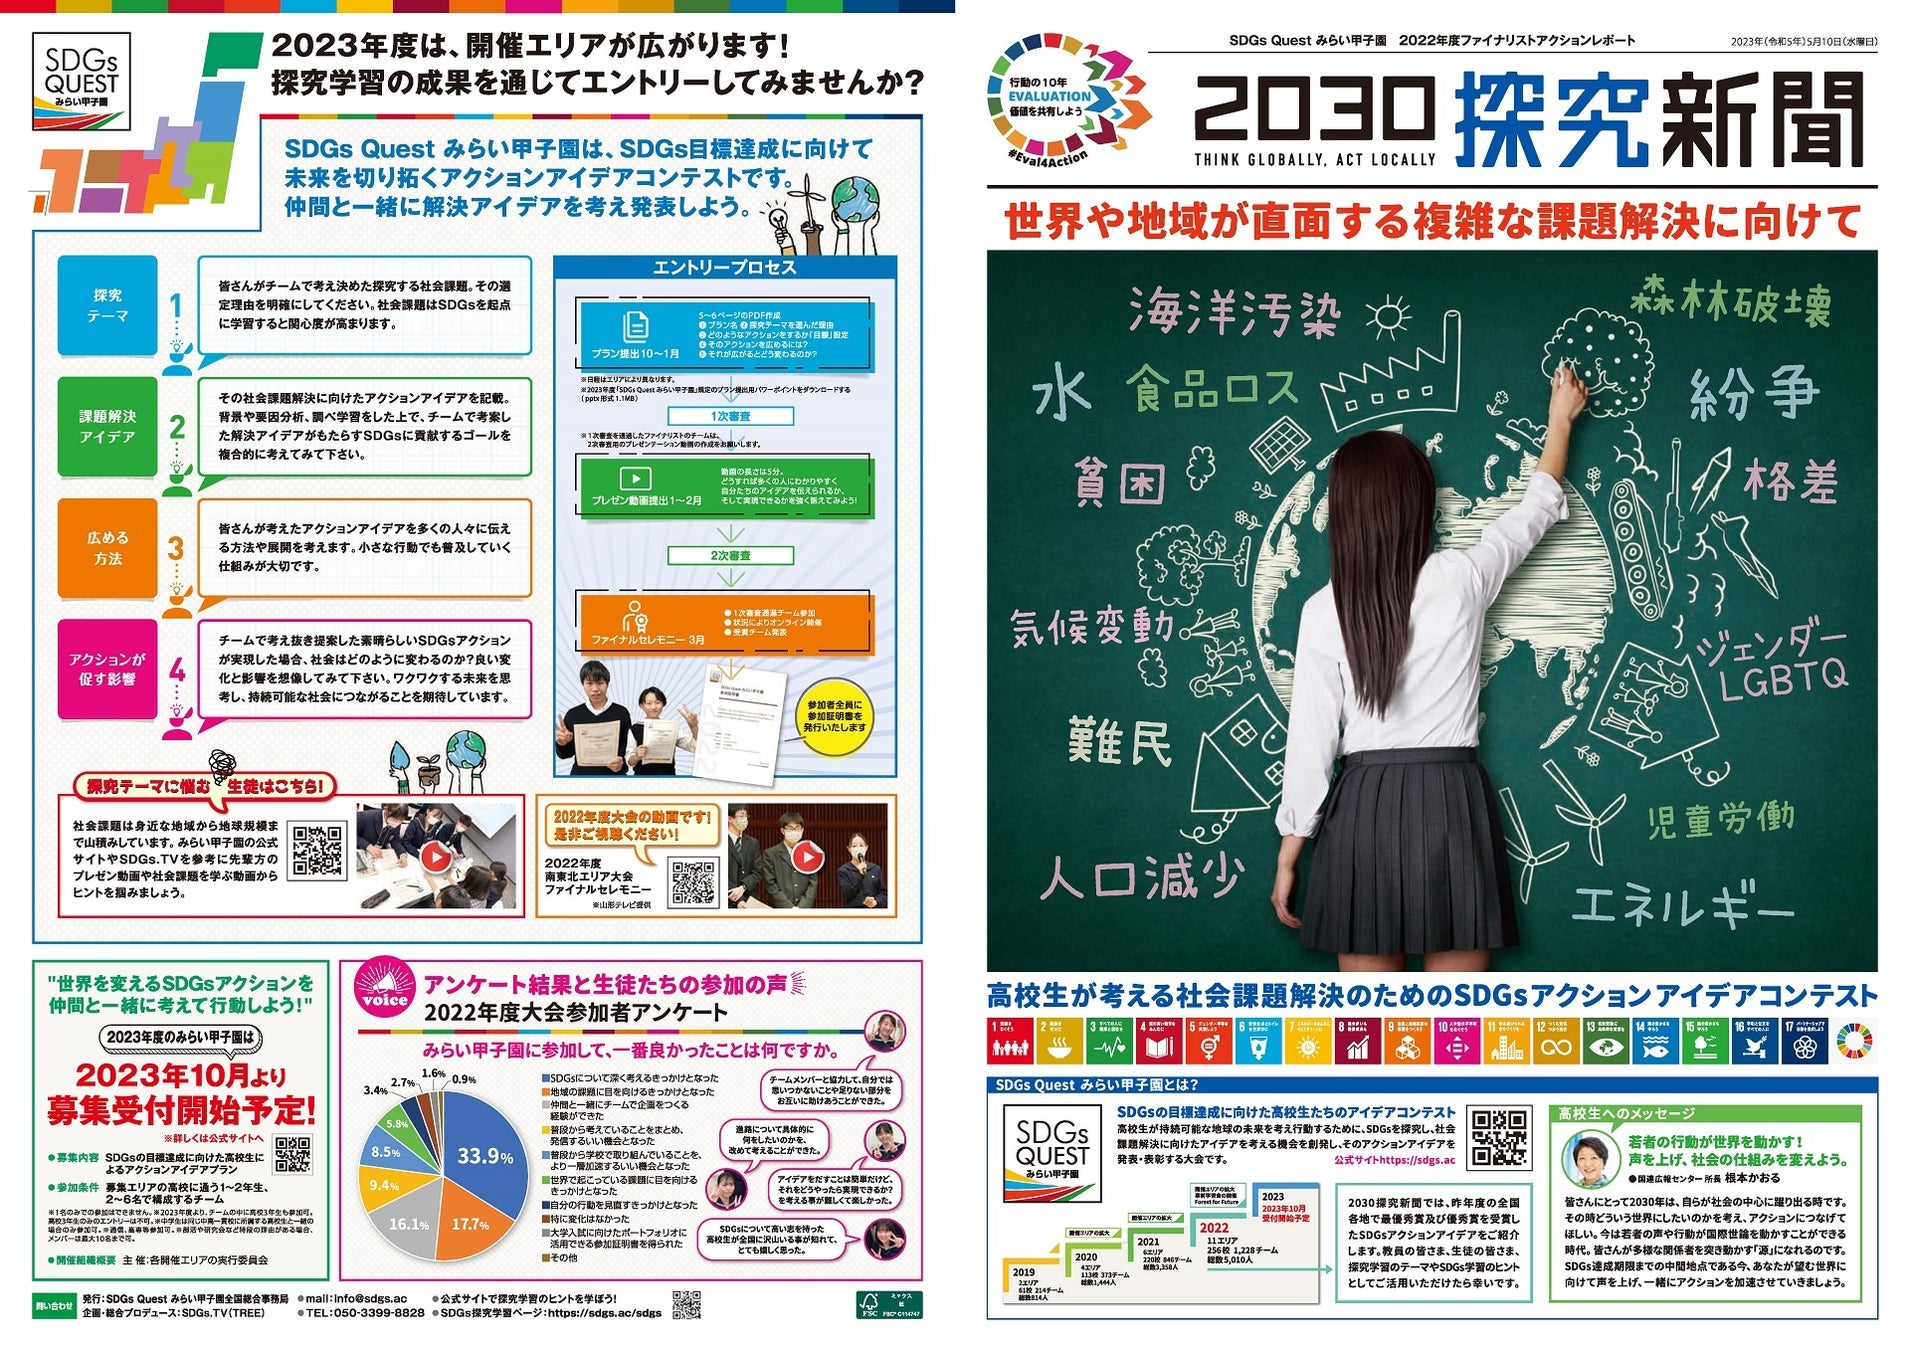 「SDGs QUESTみらい甲子園」オフィシャルスポンサーとして協賛のサブ画像3